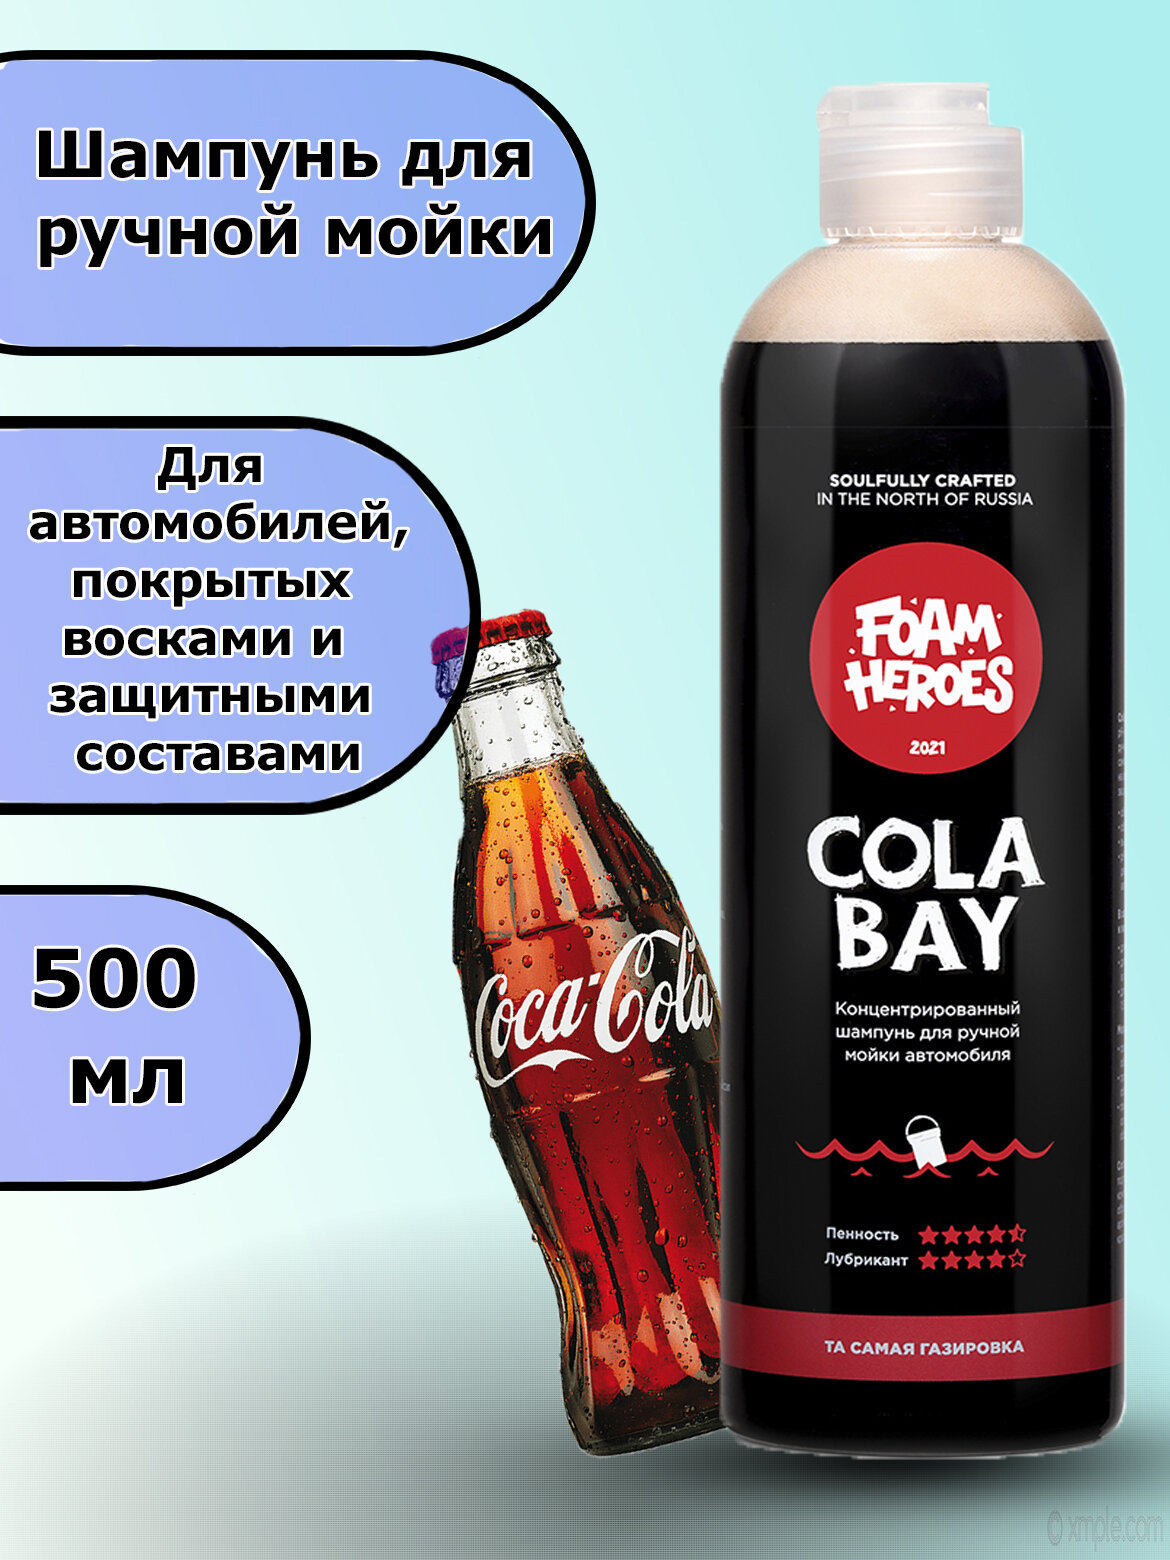 FHB001 Шампунь для ручной мойки Cola Bay та самая газировка (500мл)